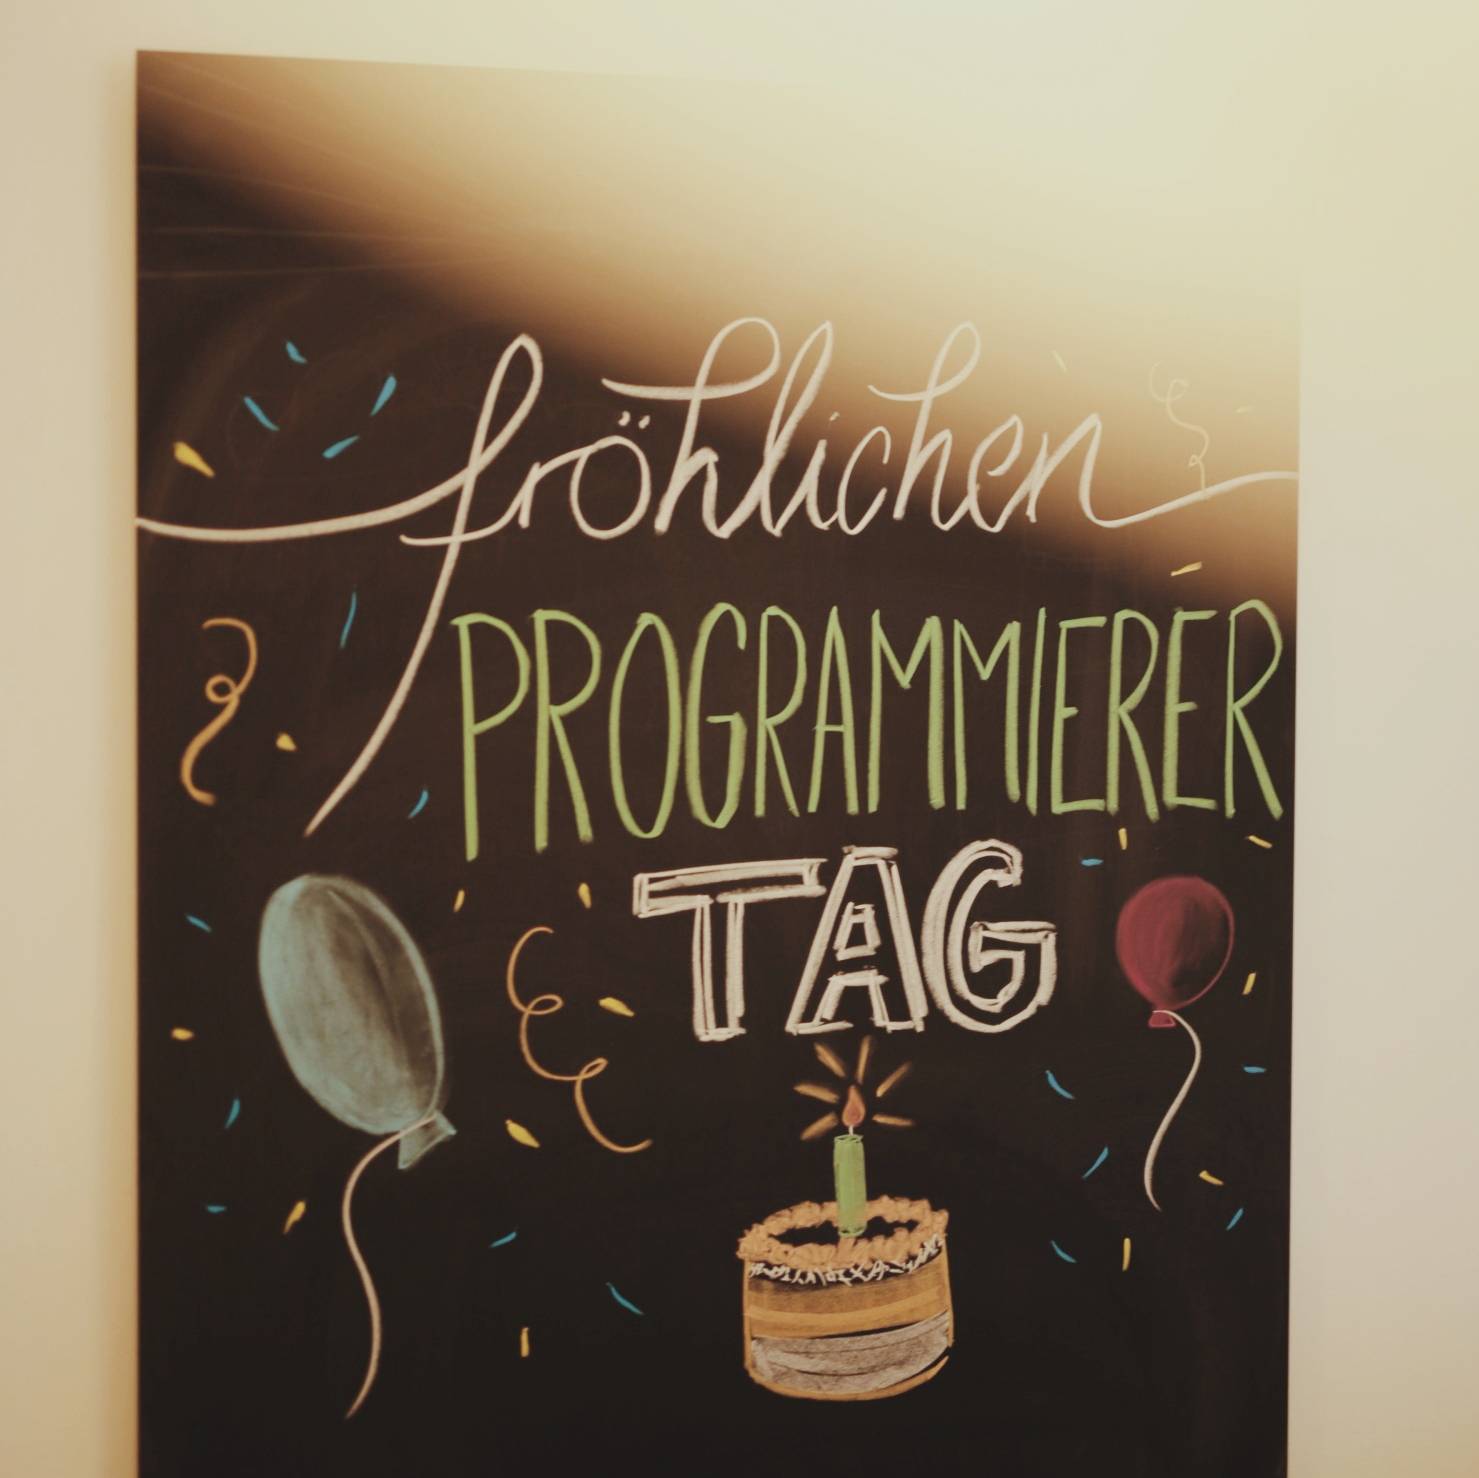 Auf einer großen Tafel steht in bunter Schrift "Fröhlicher Programmierer-Tag"